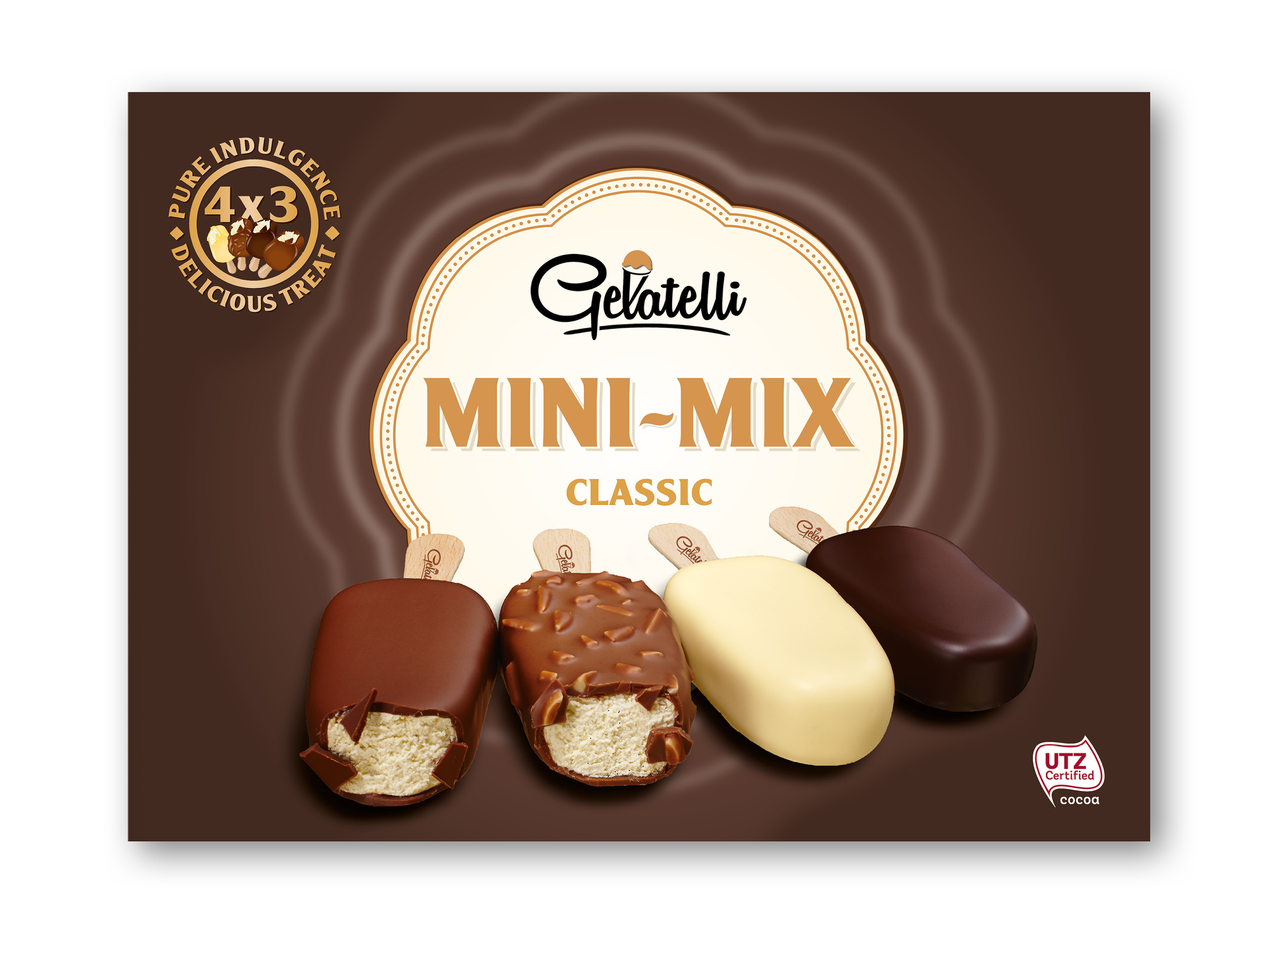 GELATELLI Mini-mix is